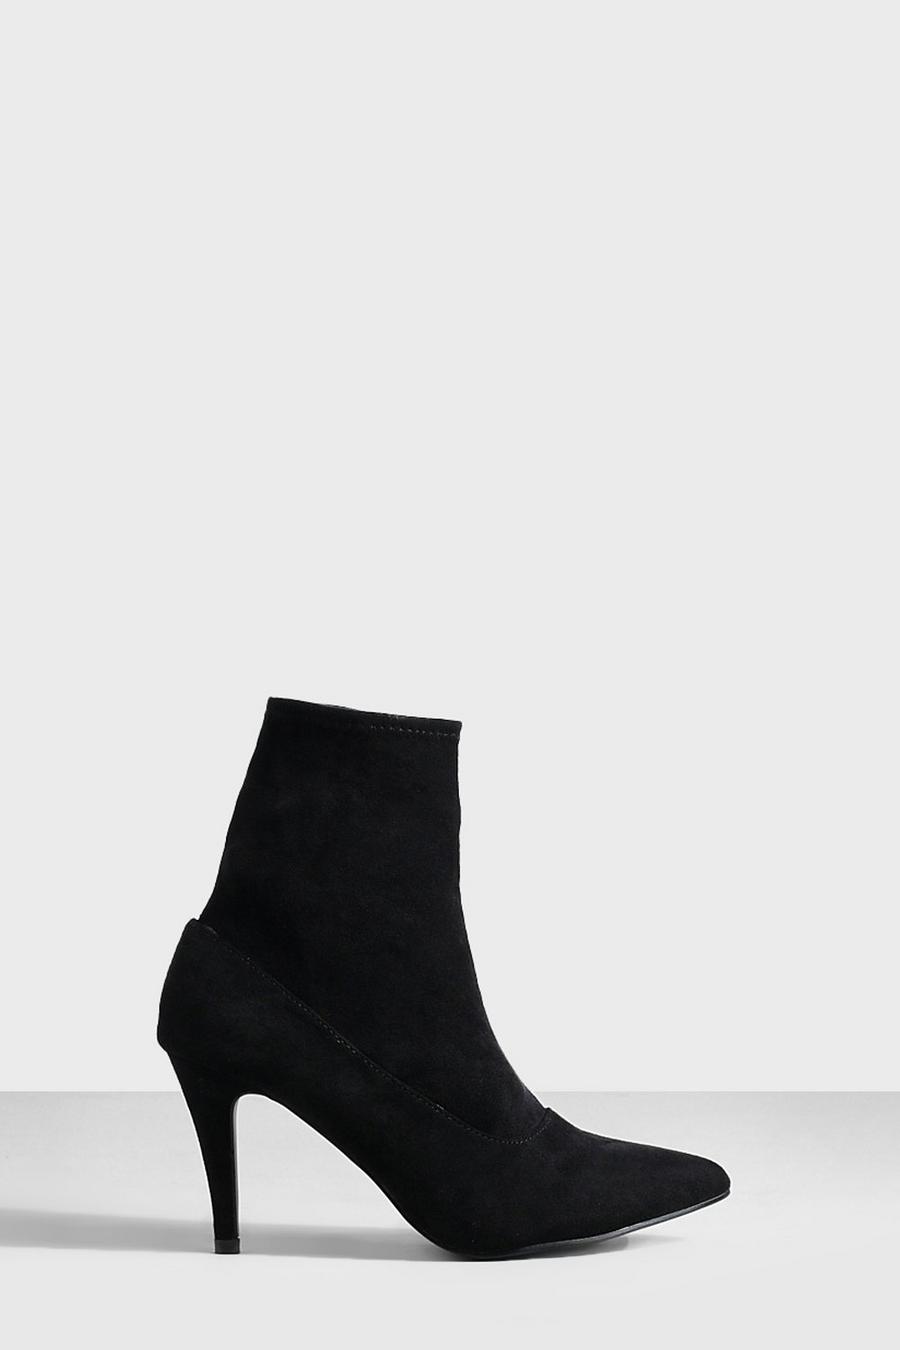 Botas calcetín de tacón de aguja básicas, Negro black